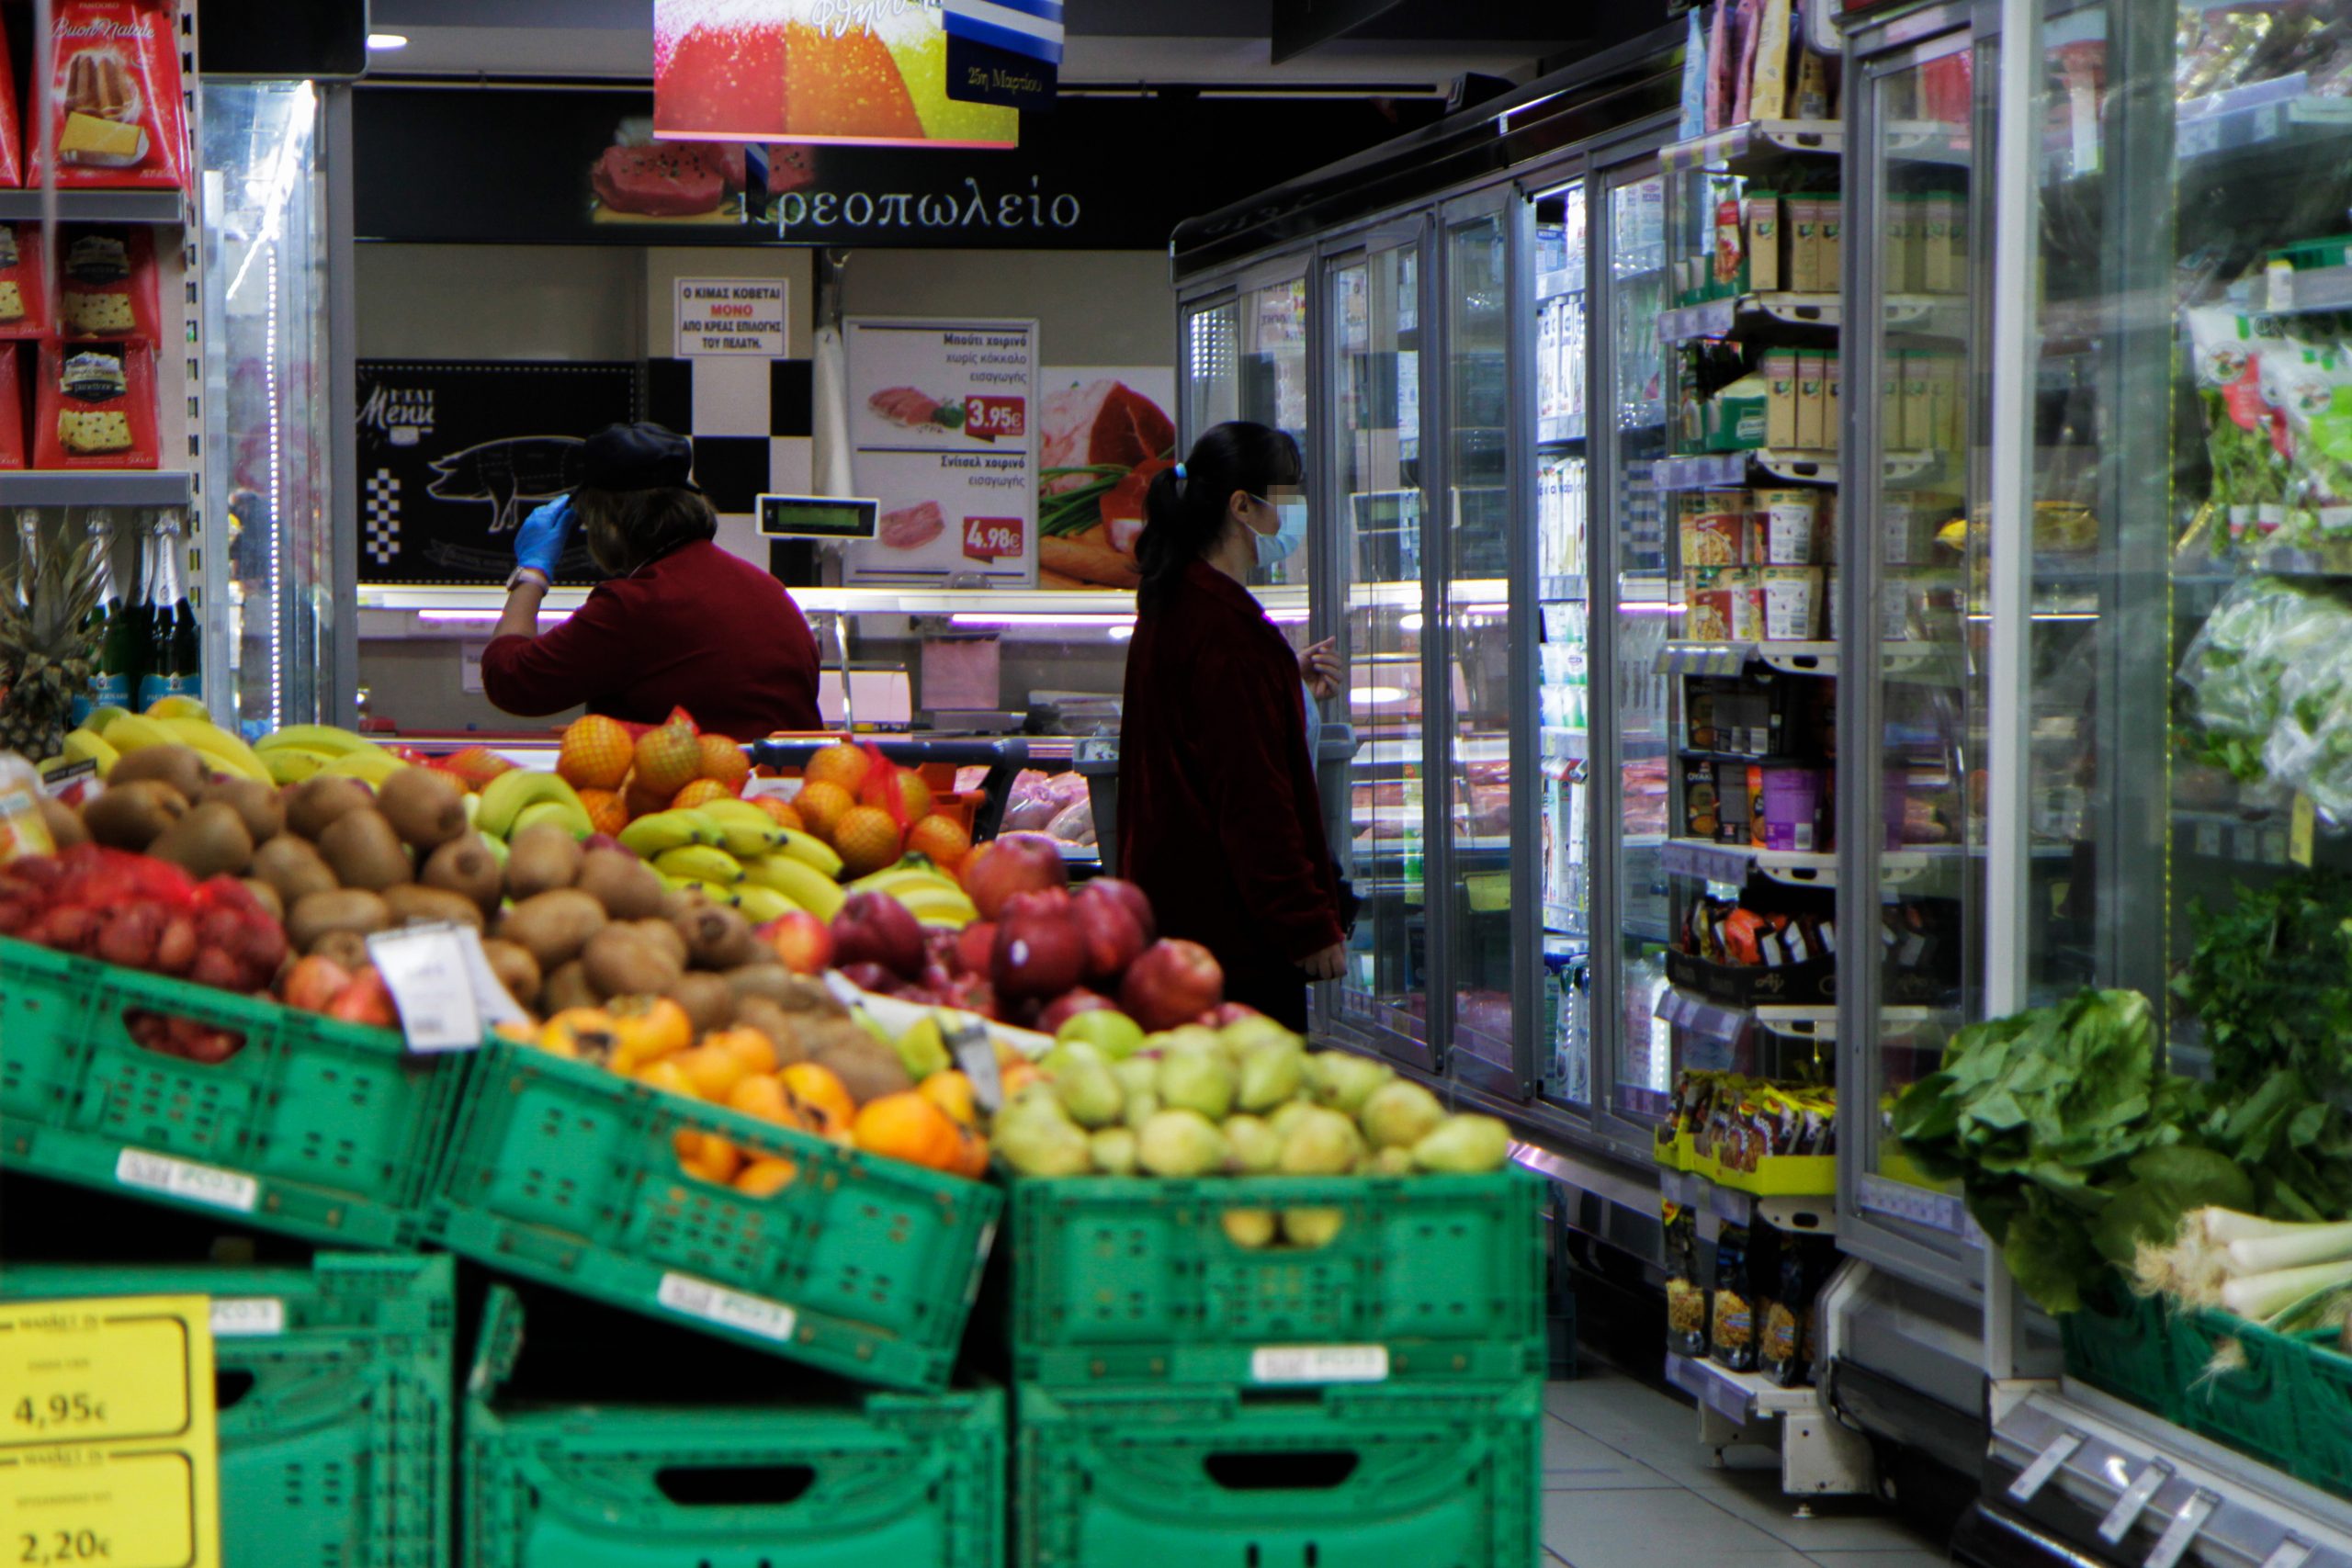 ΕΕΚΕ: Χρήσιμες συμβουλές για αγορές στο σούπερ μάρκετ